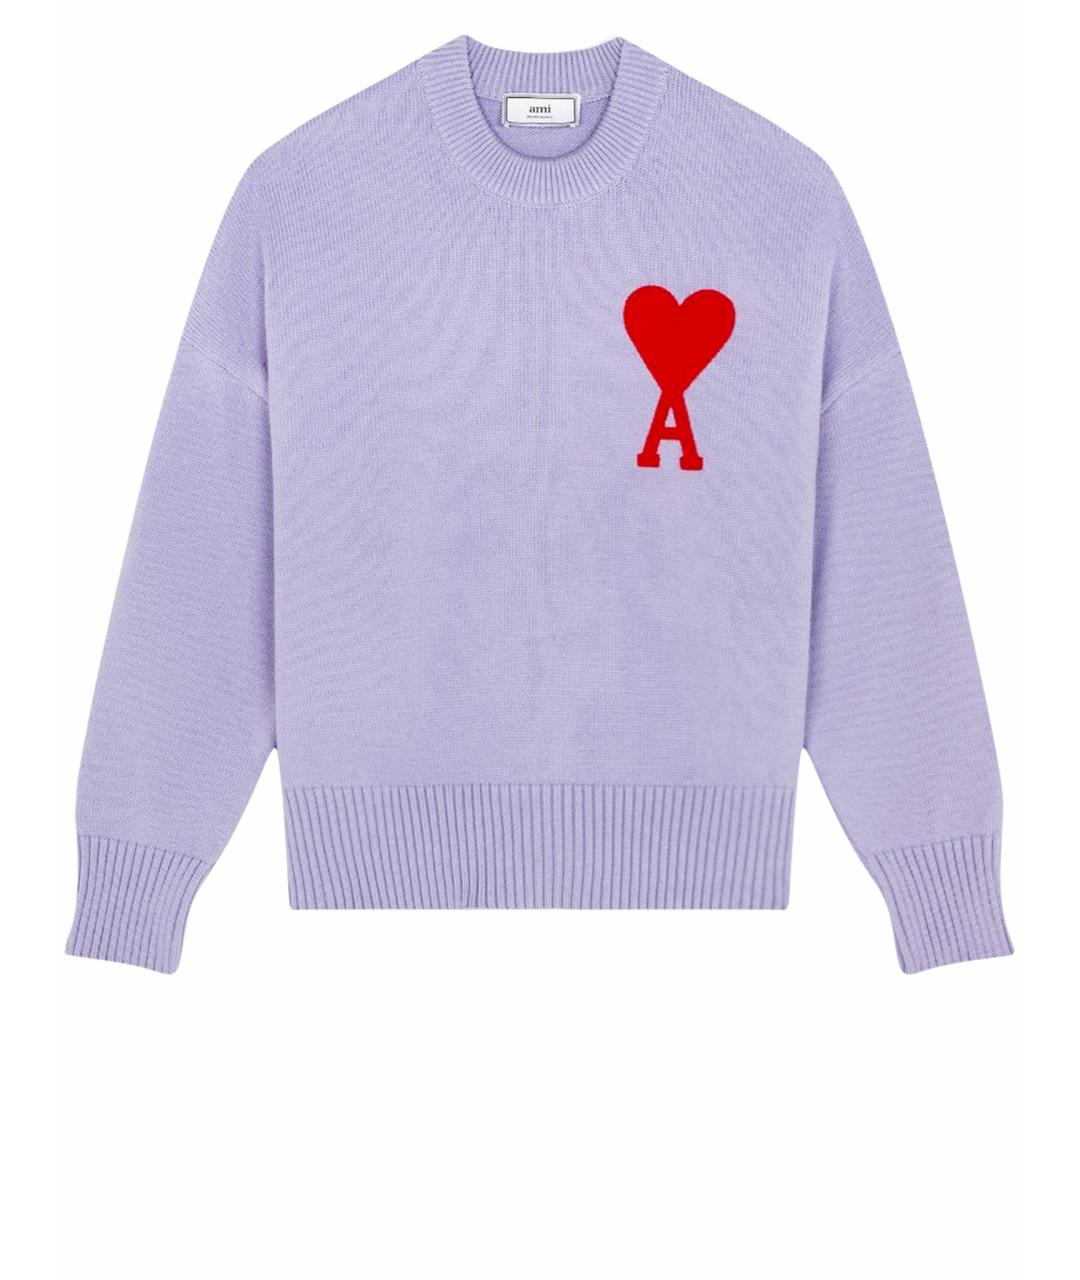 Ami Paris Хлопковый джемпер / свитер, фото 1